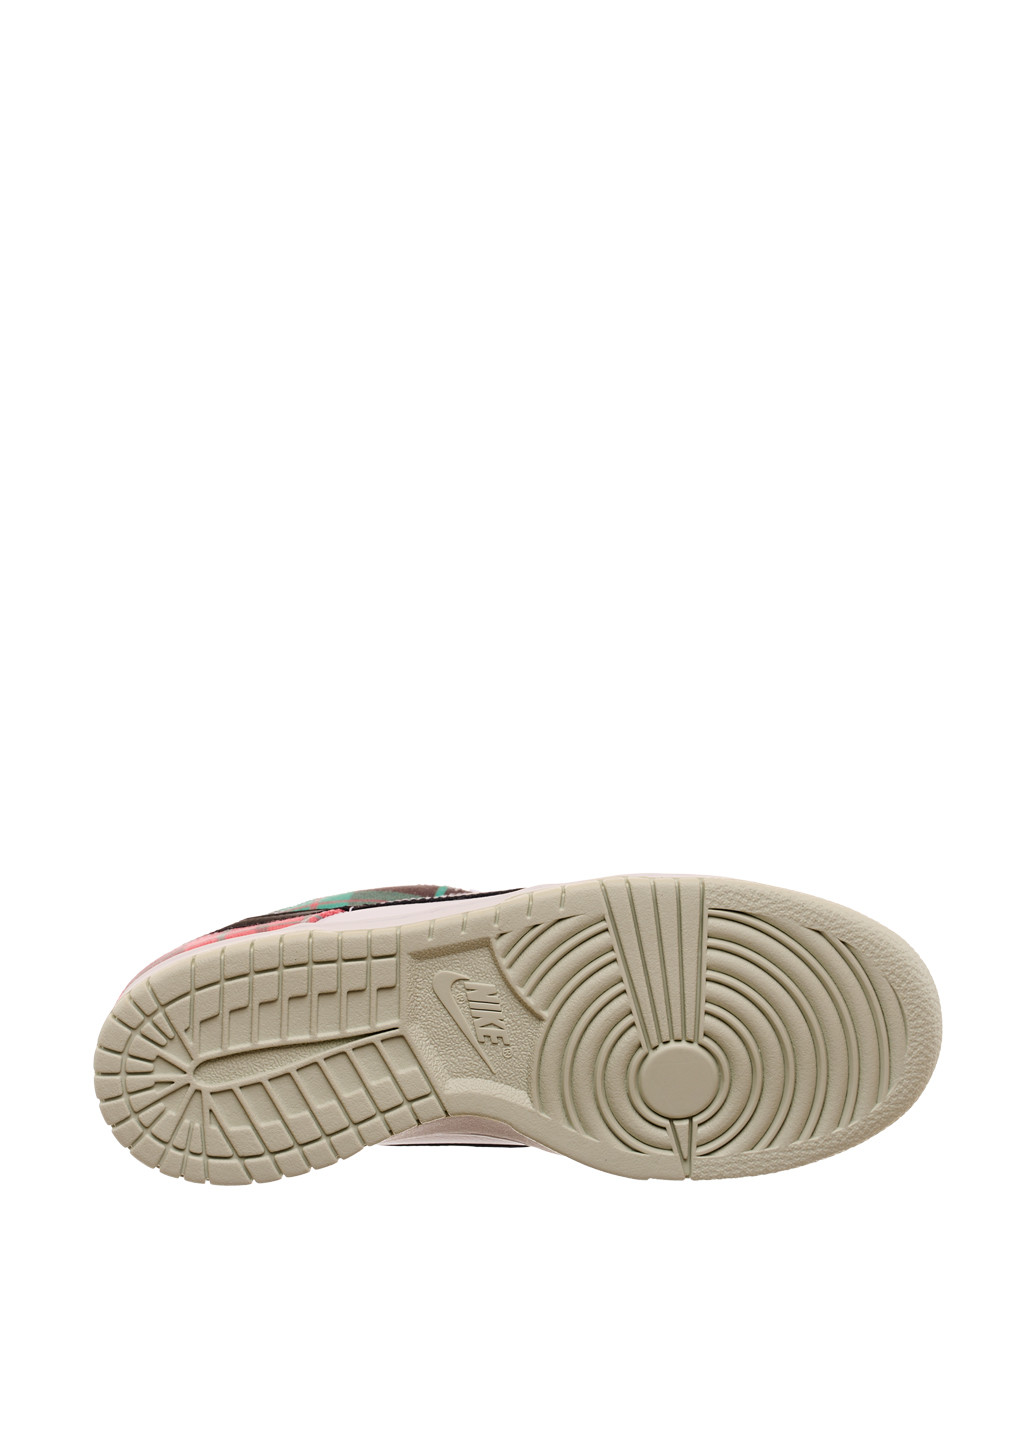 Цветные демисезонные кроссовки dv8919-100_2024 Nike Dunk Low SE Gs